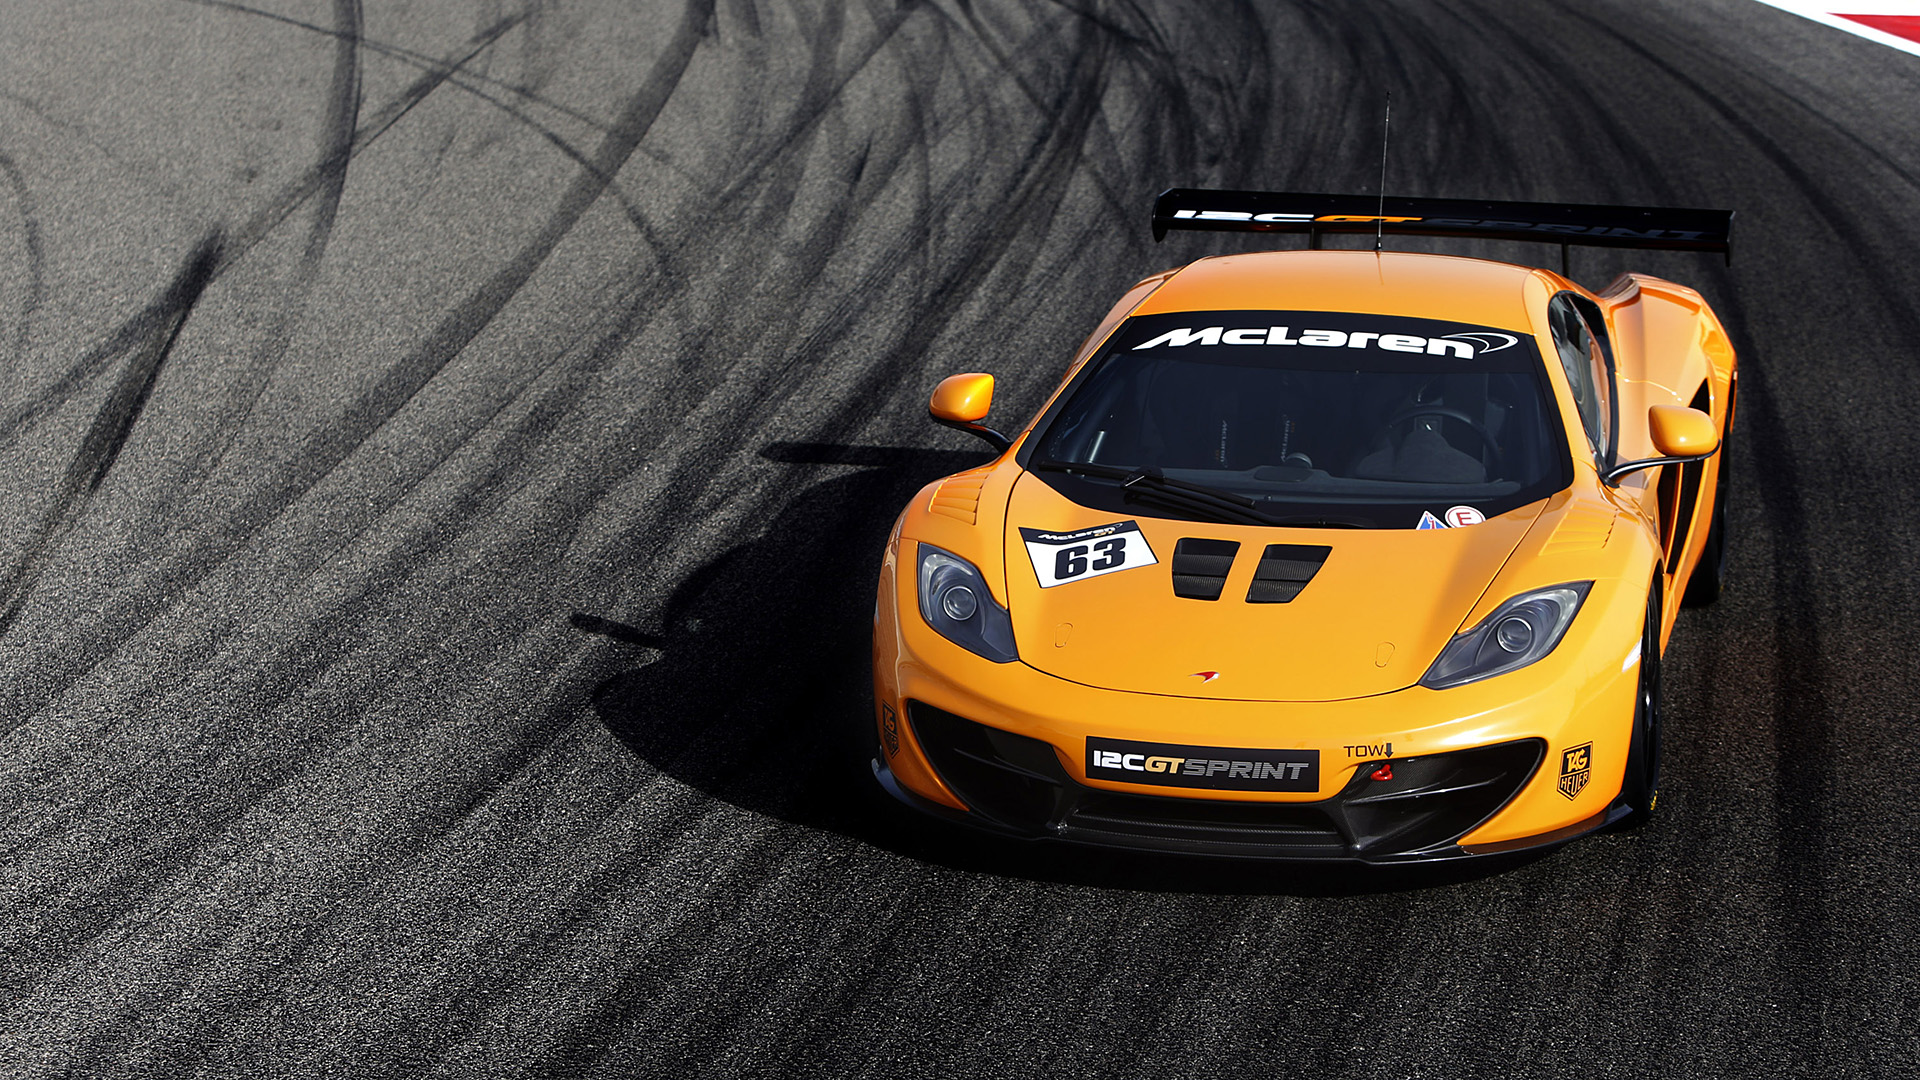  2014 McLaren 12C GT Sprint Wallpaper.